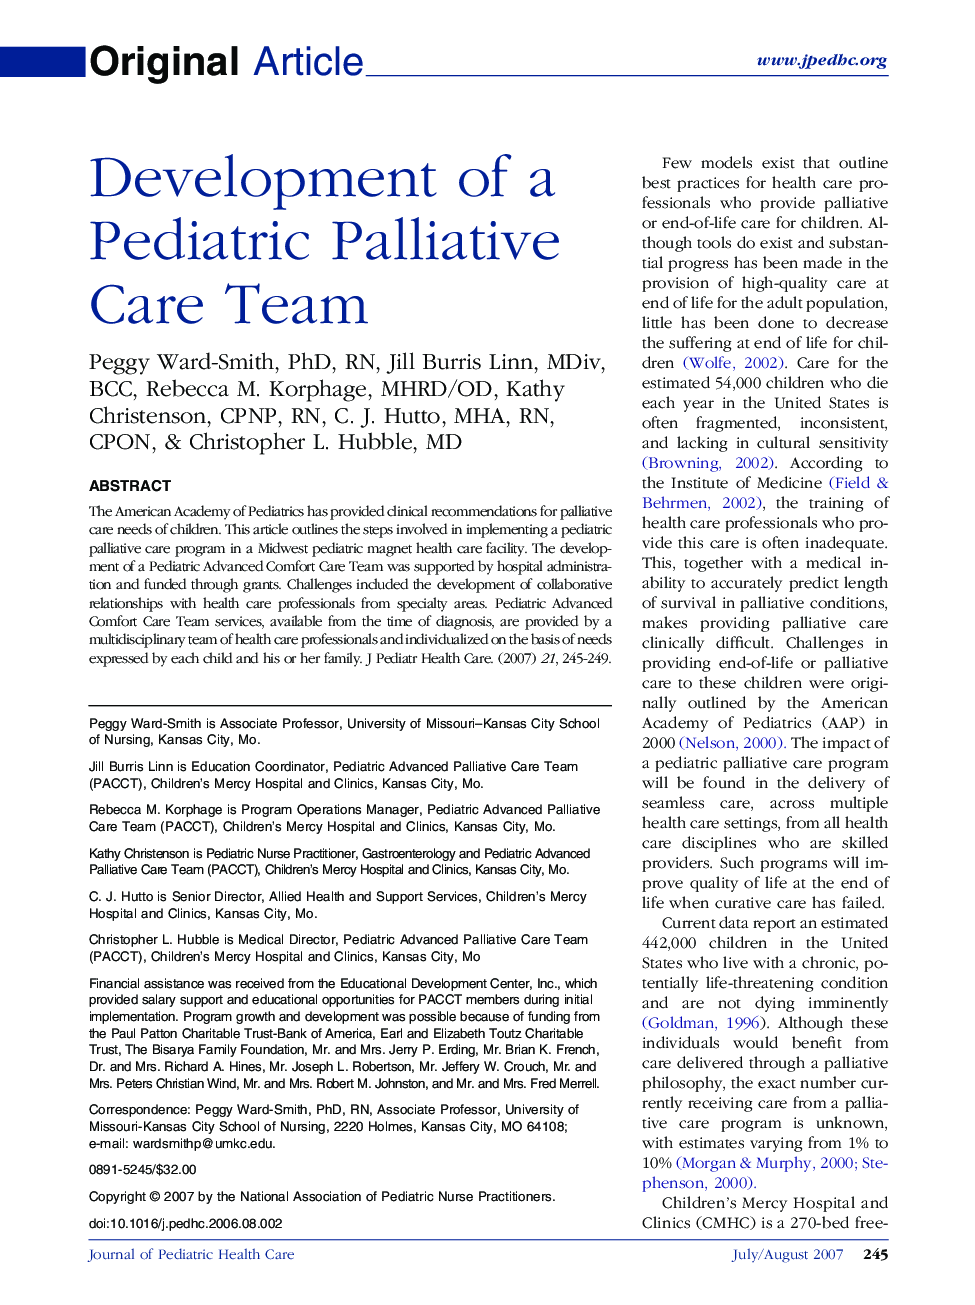 Development of a Pediatric Palliative Care Team 